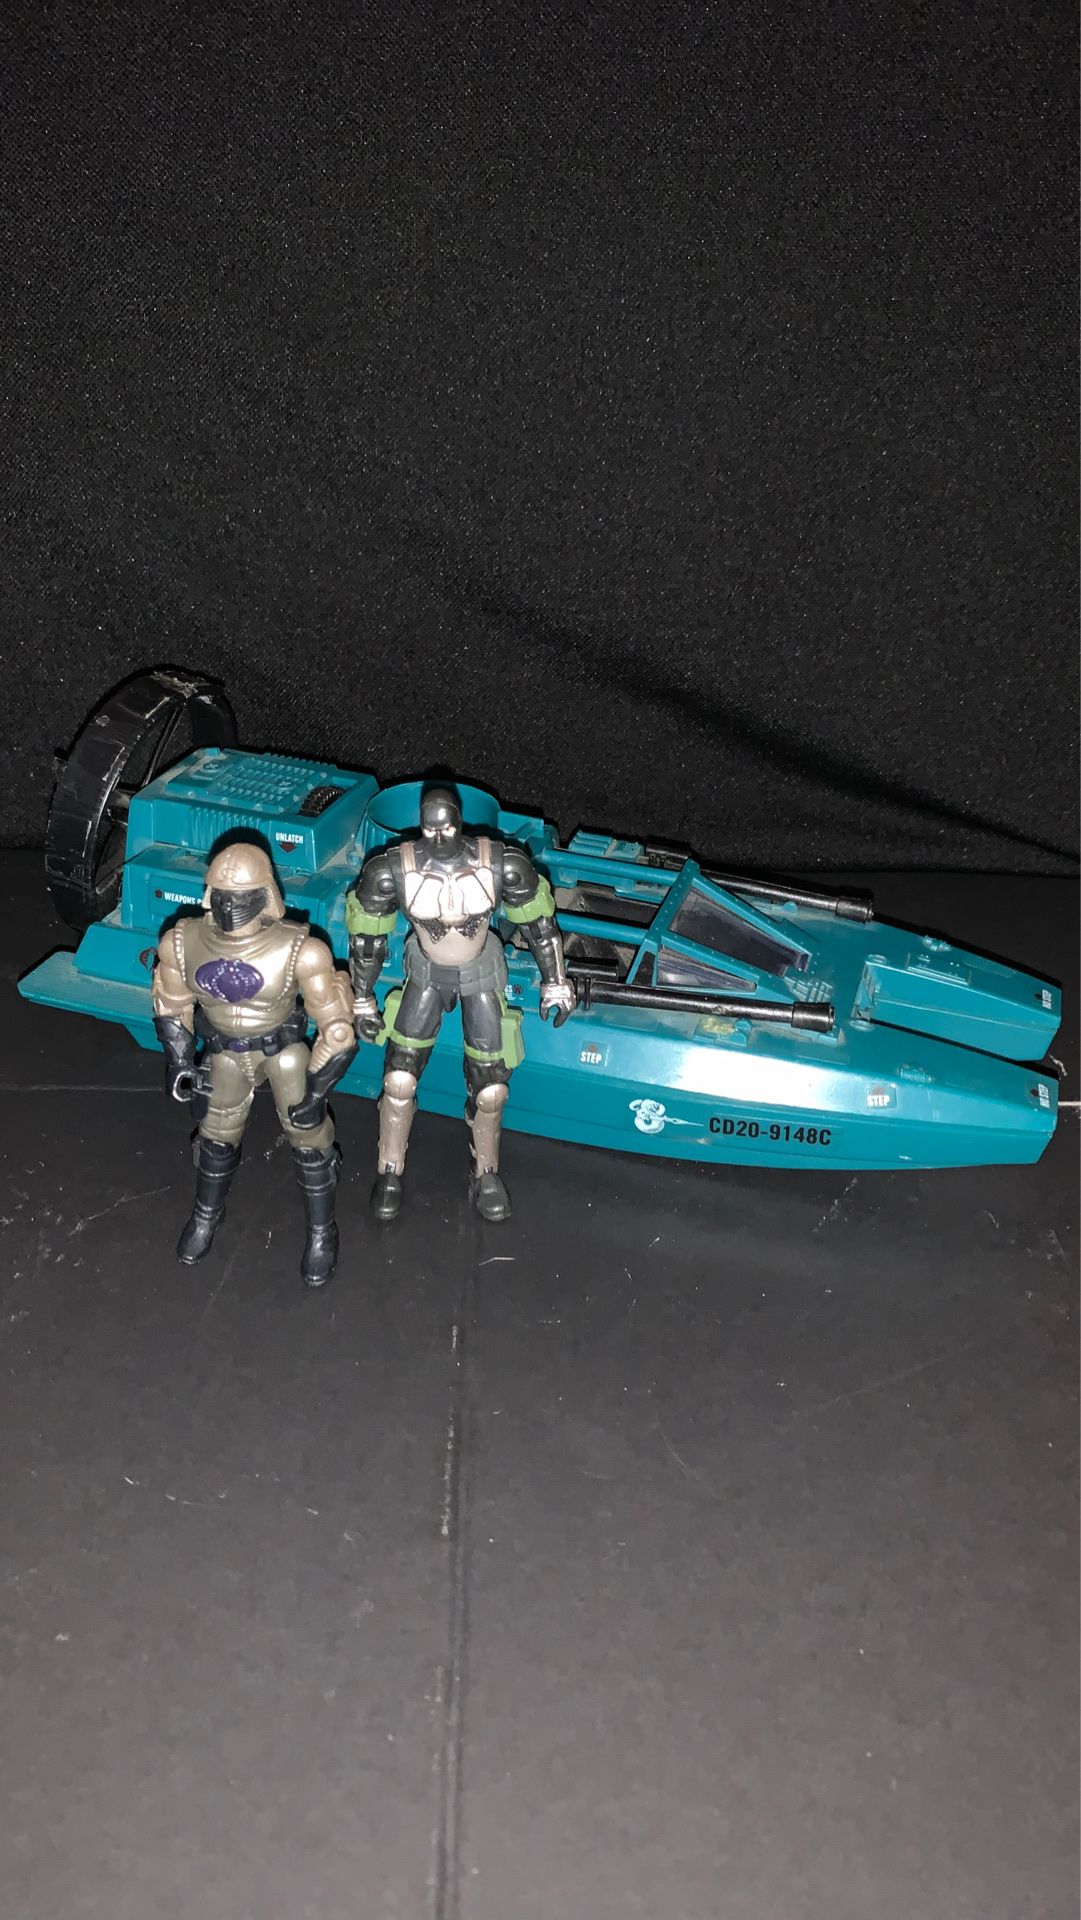 1984 Cobra Water Moccasin with 2x Gi Joe figures 2002